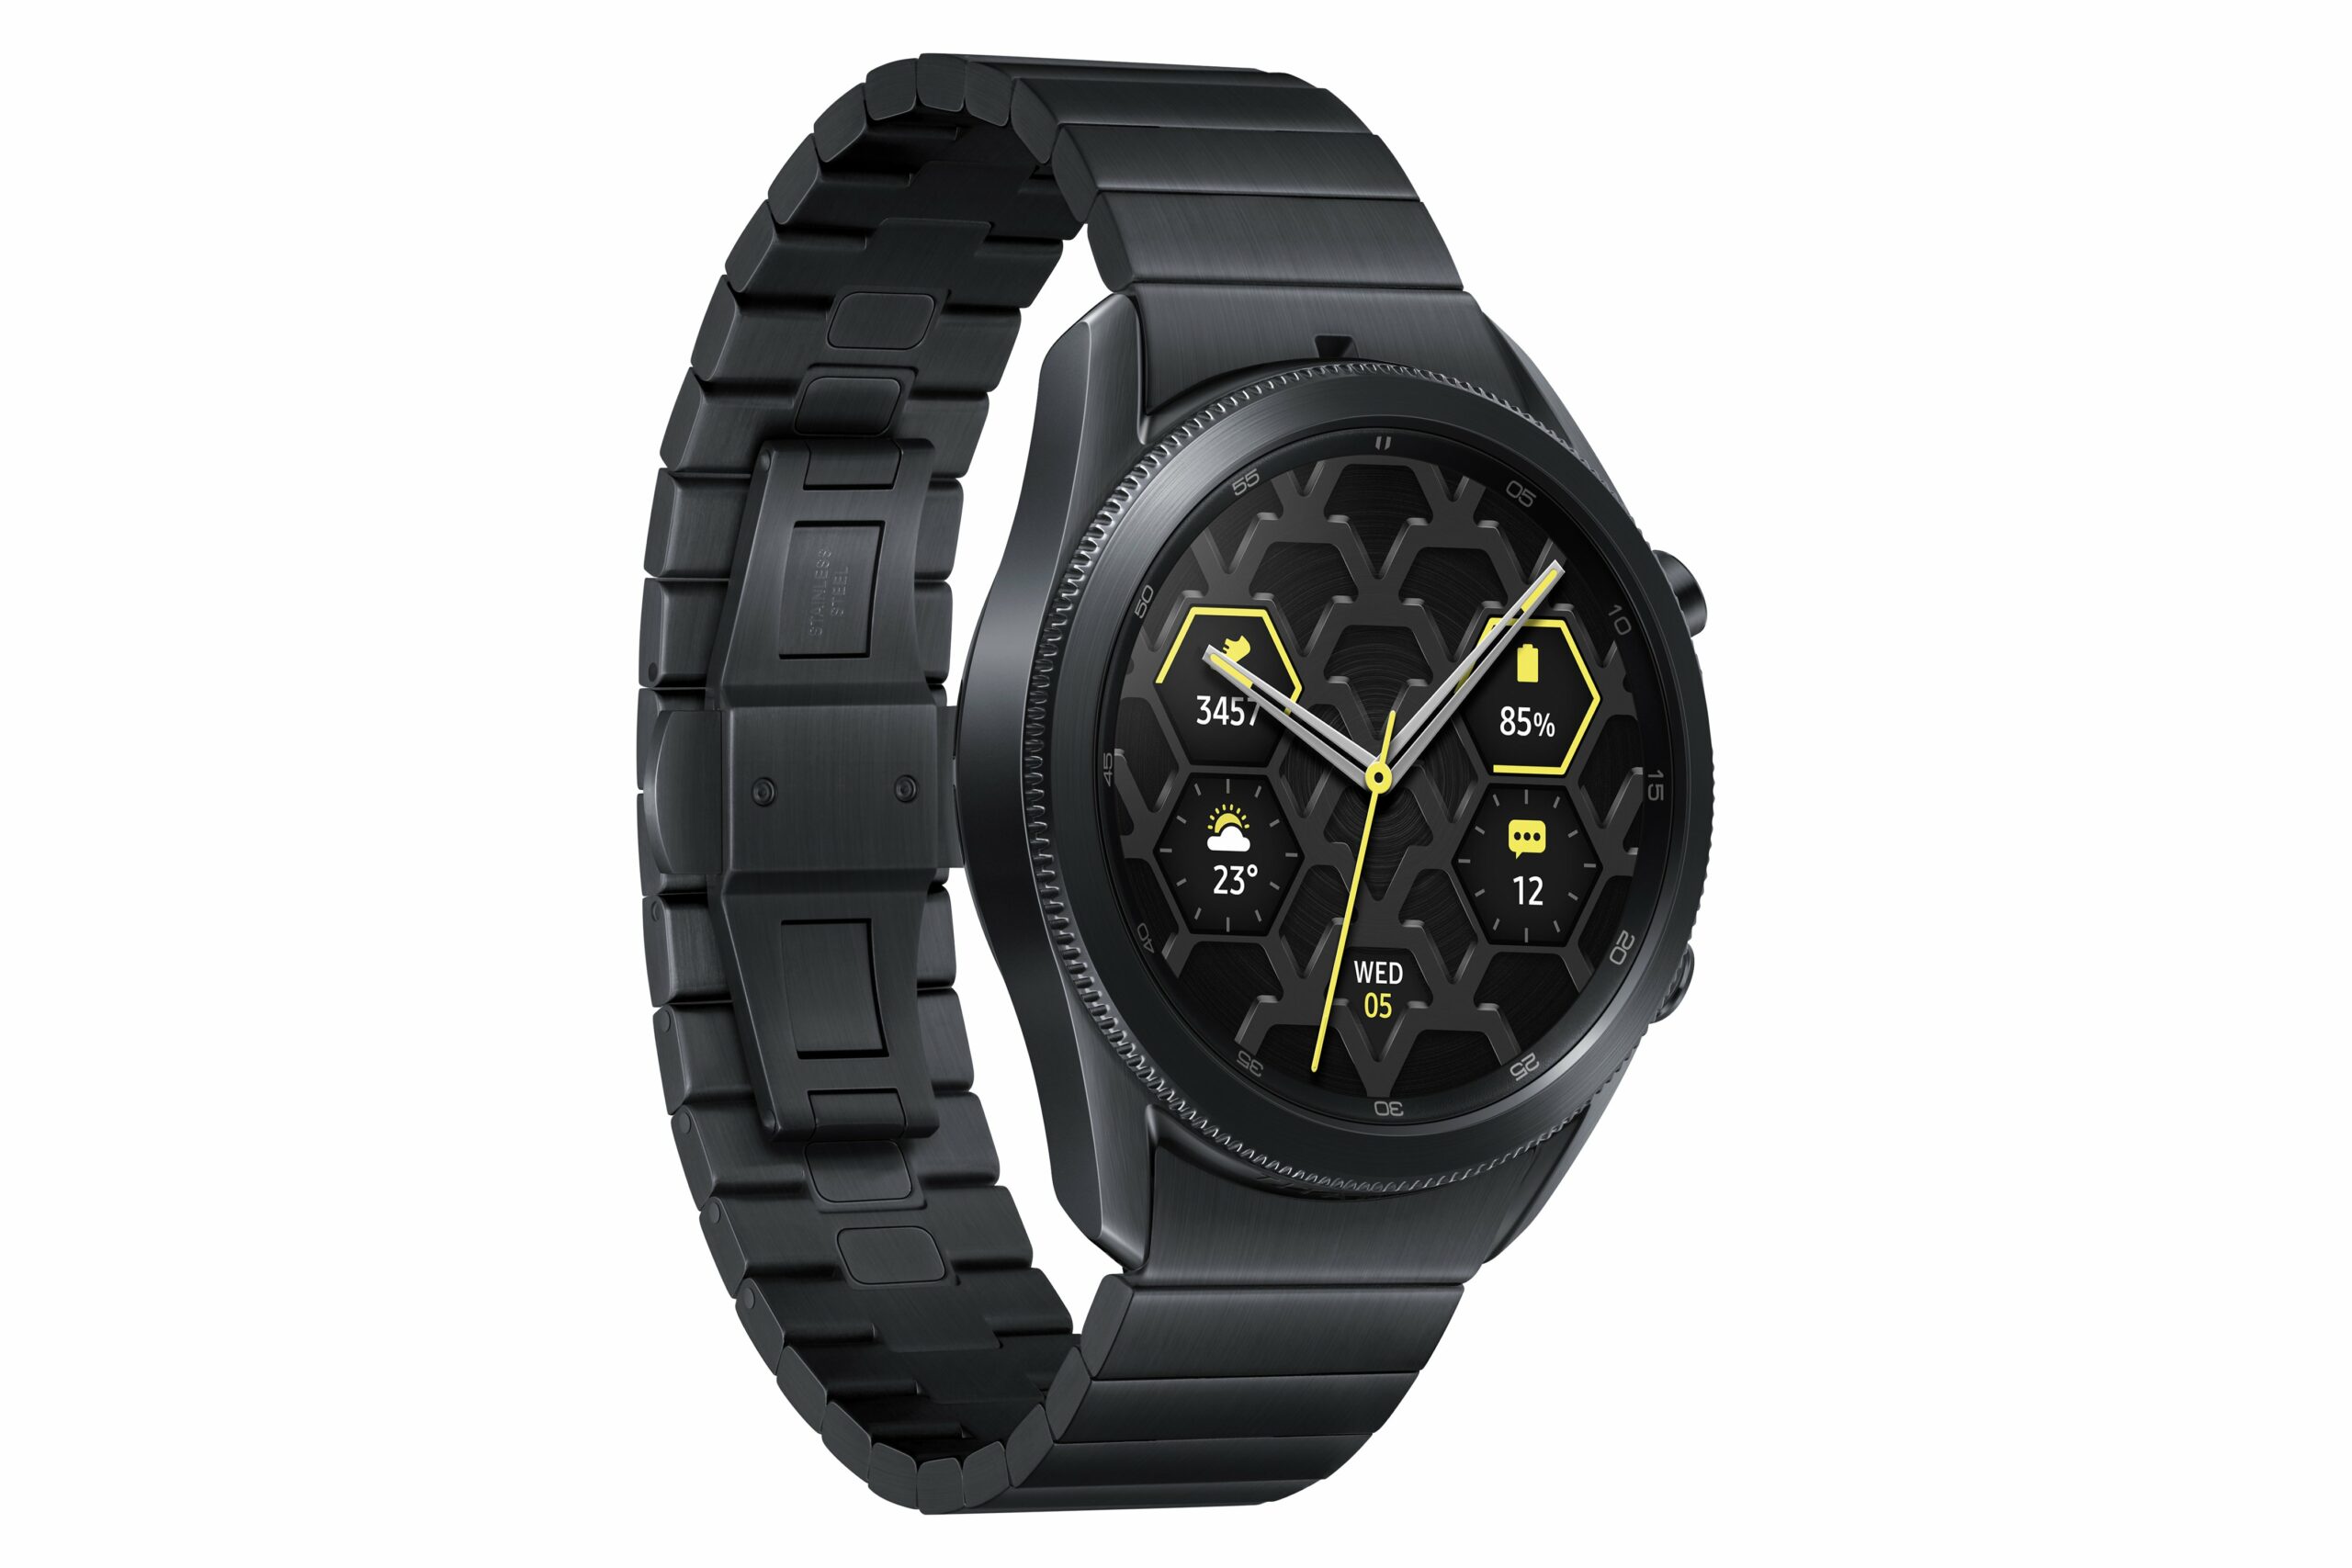 Samsung Galaxy Watch 3 Titanium